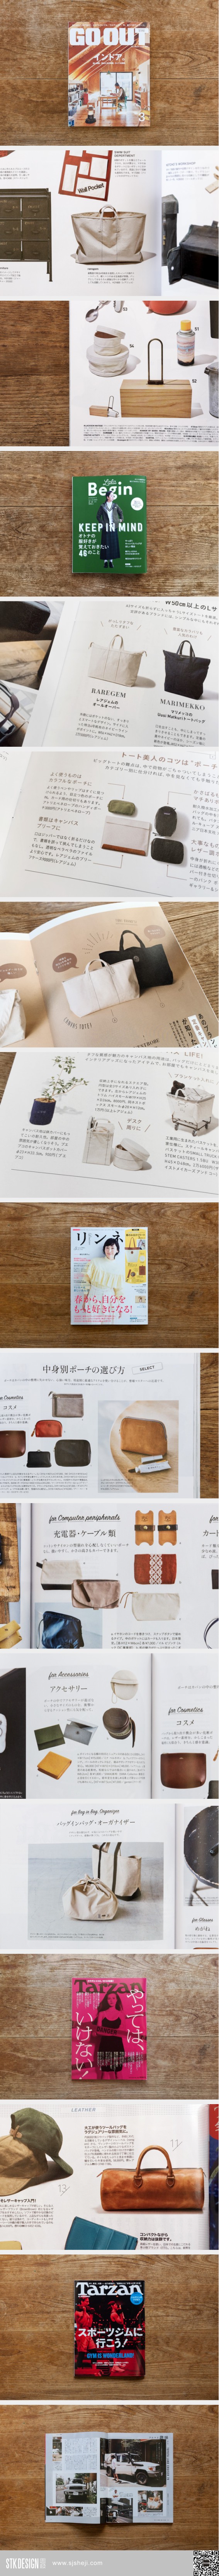 日本包包杂志设计集